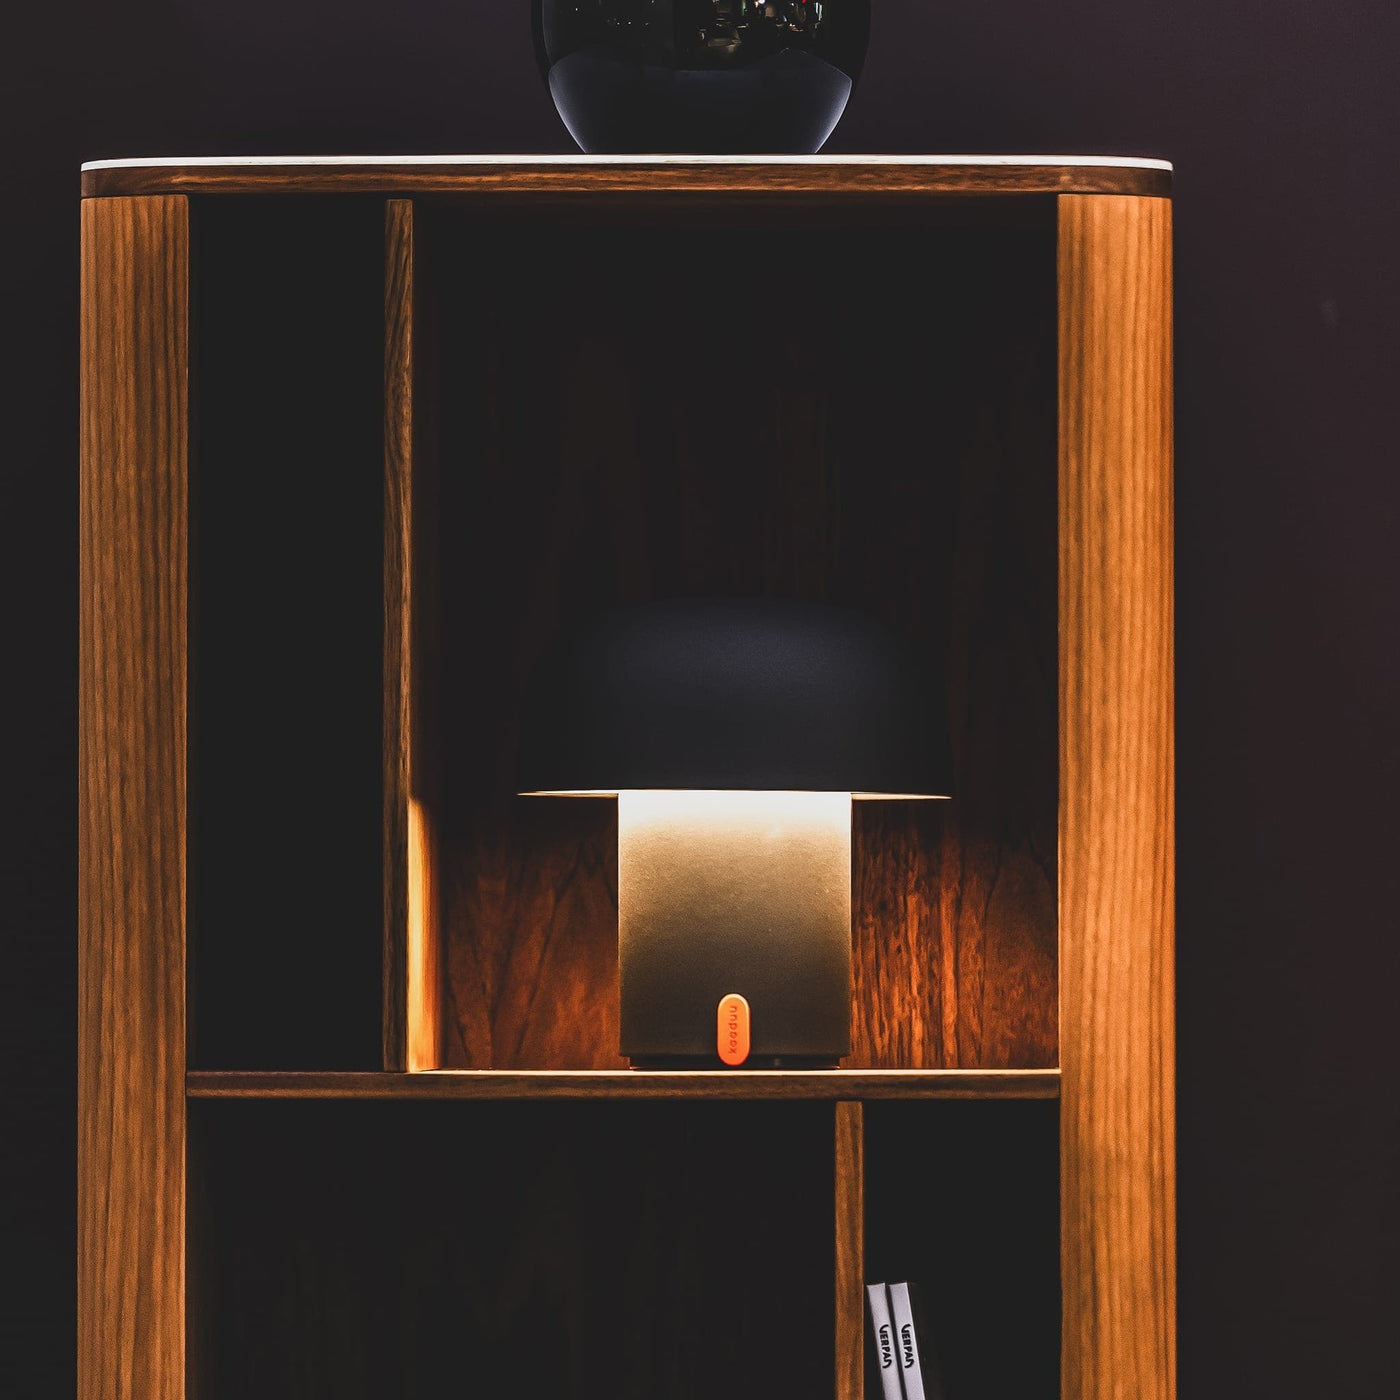 Esthétique et utilité : La lampe Sensa de kooduu, œuvre d'art lumineuse, allie esthétique moderne et port USB pratique. Idéale pour espaces contemporains et soirées détendues.